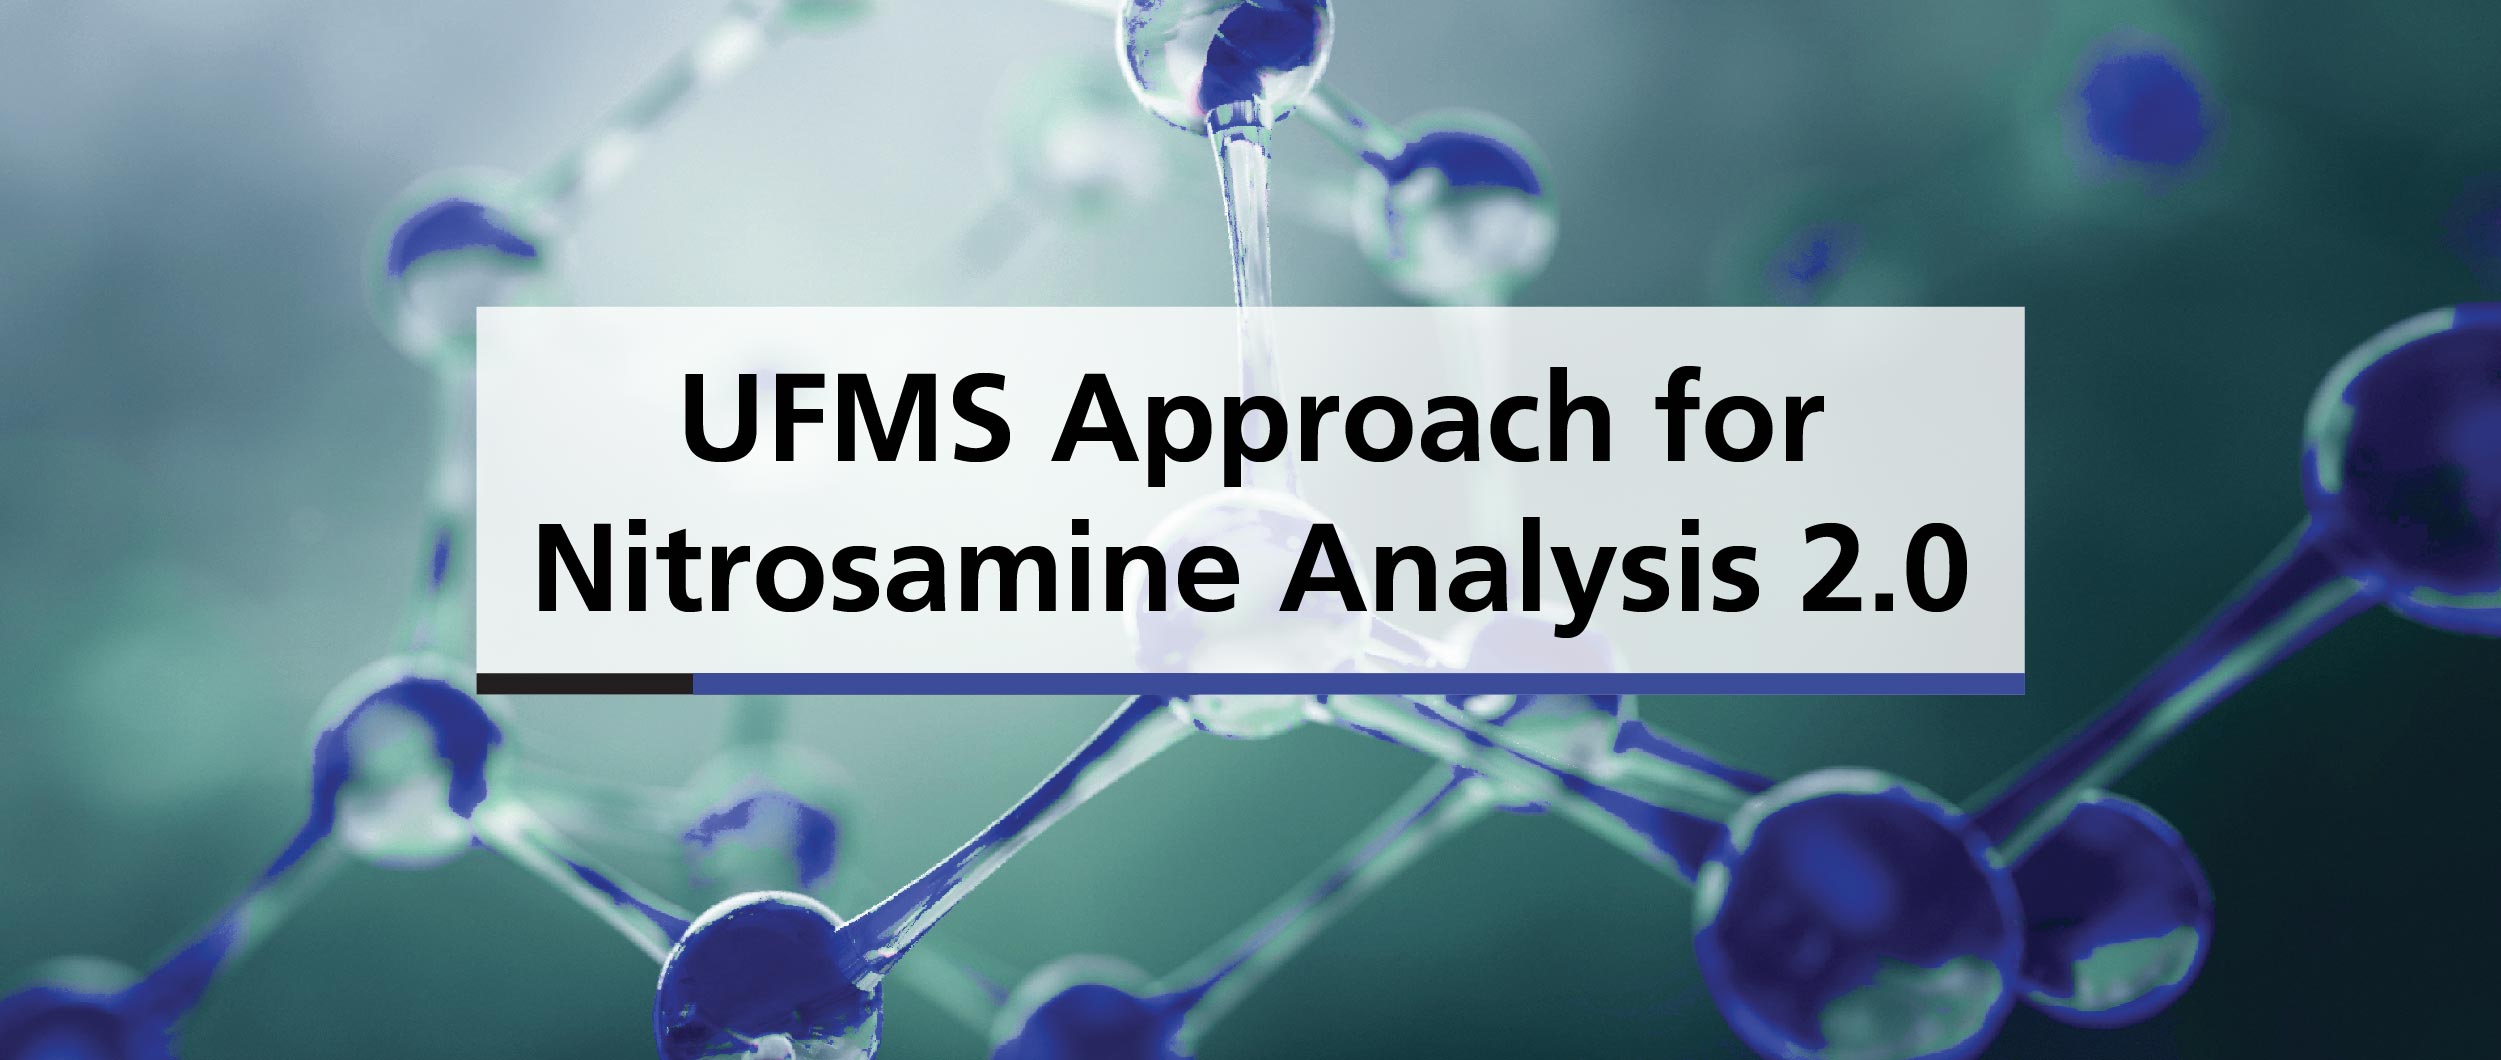 UFMS Approach for Nitrosamine Analysis 2.0